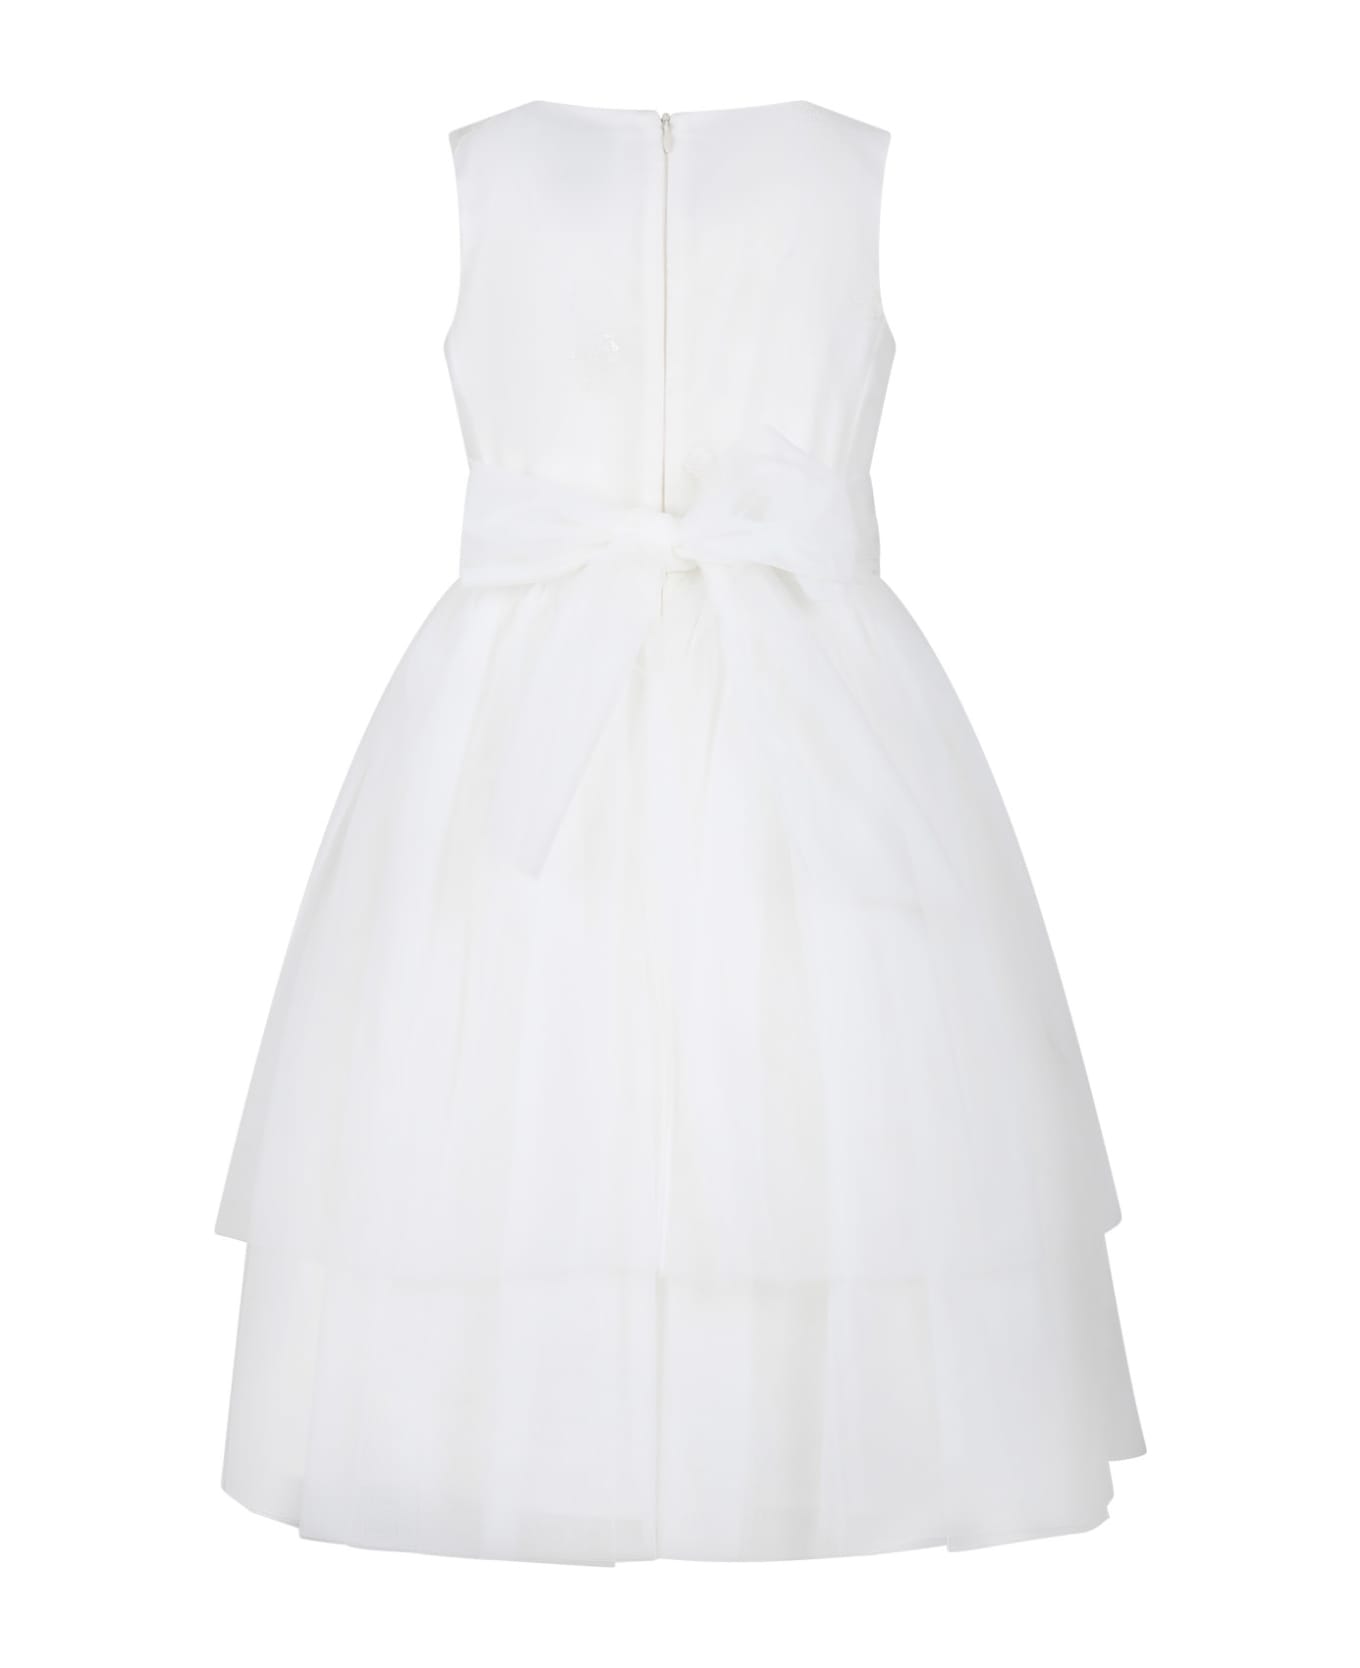 Simonetta White Dress For Girl With Sequins - White